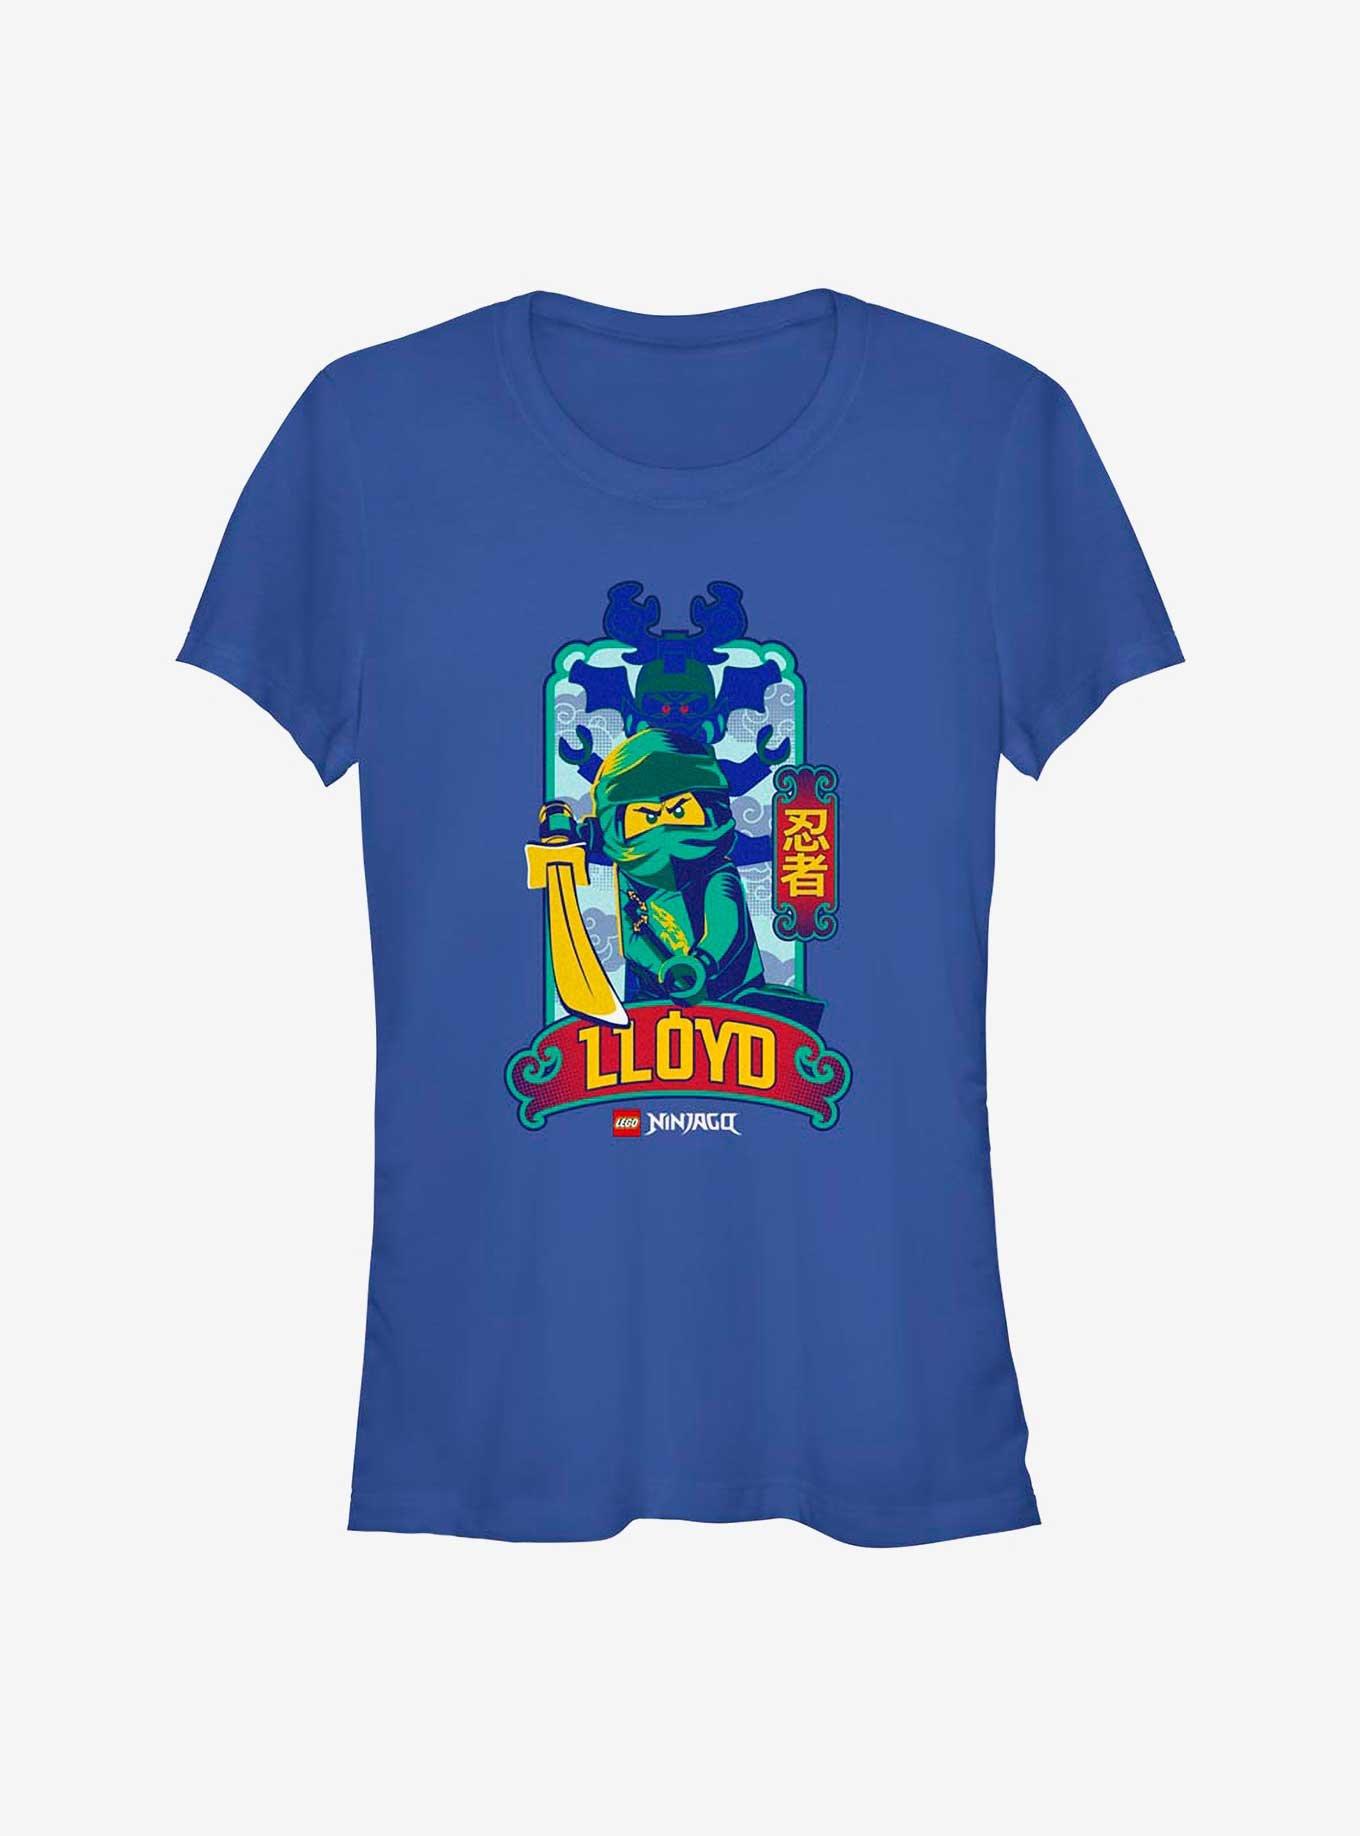 Lego Ninjago Lloyd Box Up Girls T-Shirt